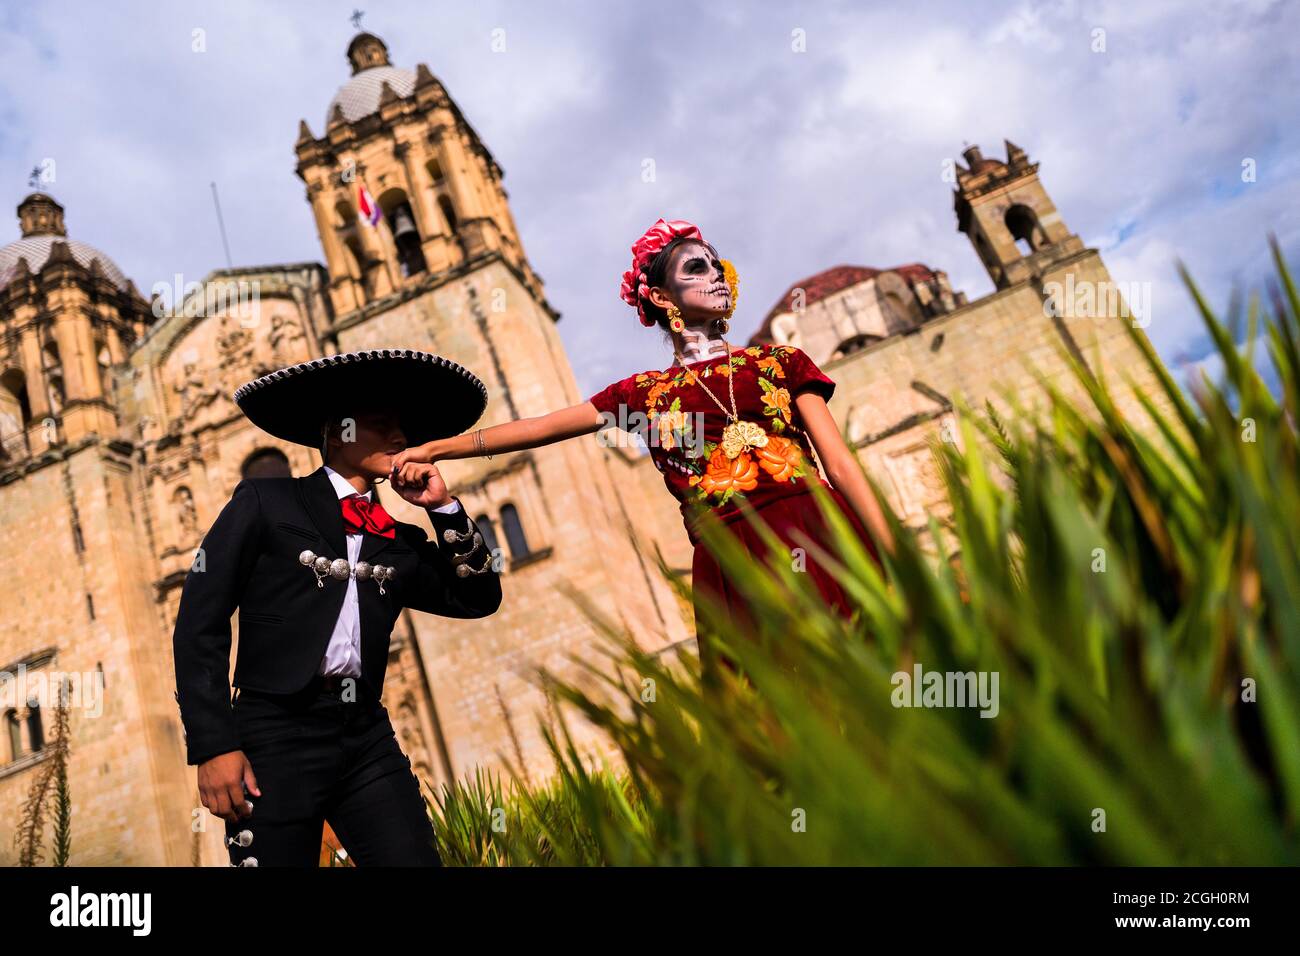 Un jeune mexicain, habillé comme Mariachi, embrasse une main d'une jeune mexicaine, vêtue comme la Catrina, pendant le jour des morts à Oaxaca, au Mexique. Banque D'Images